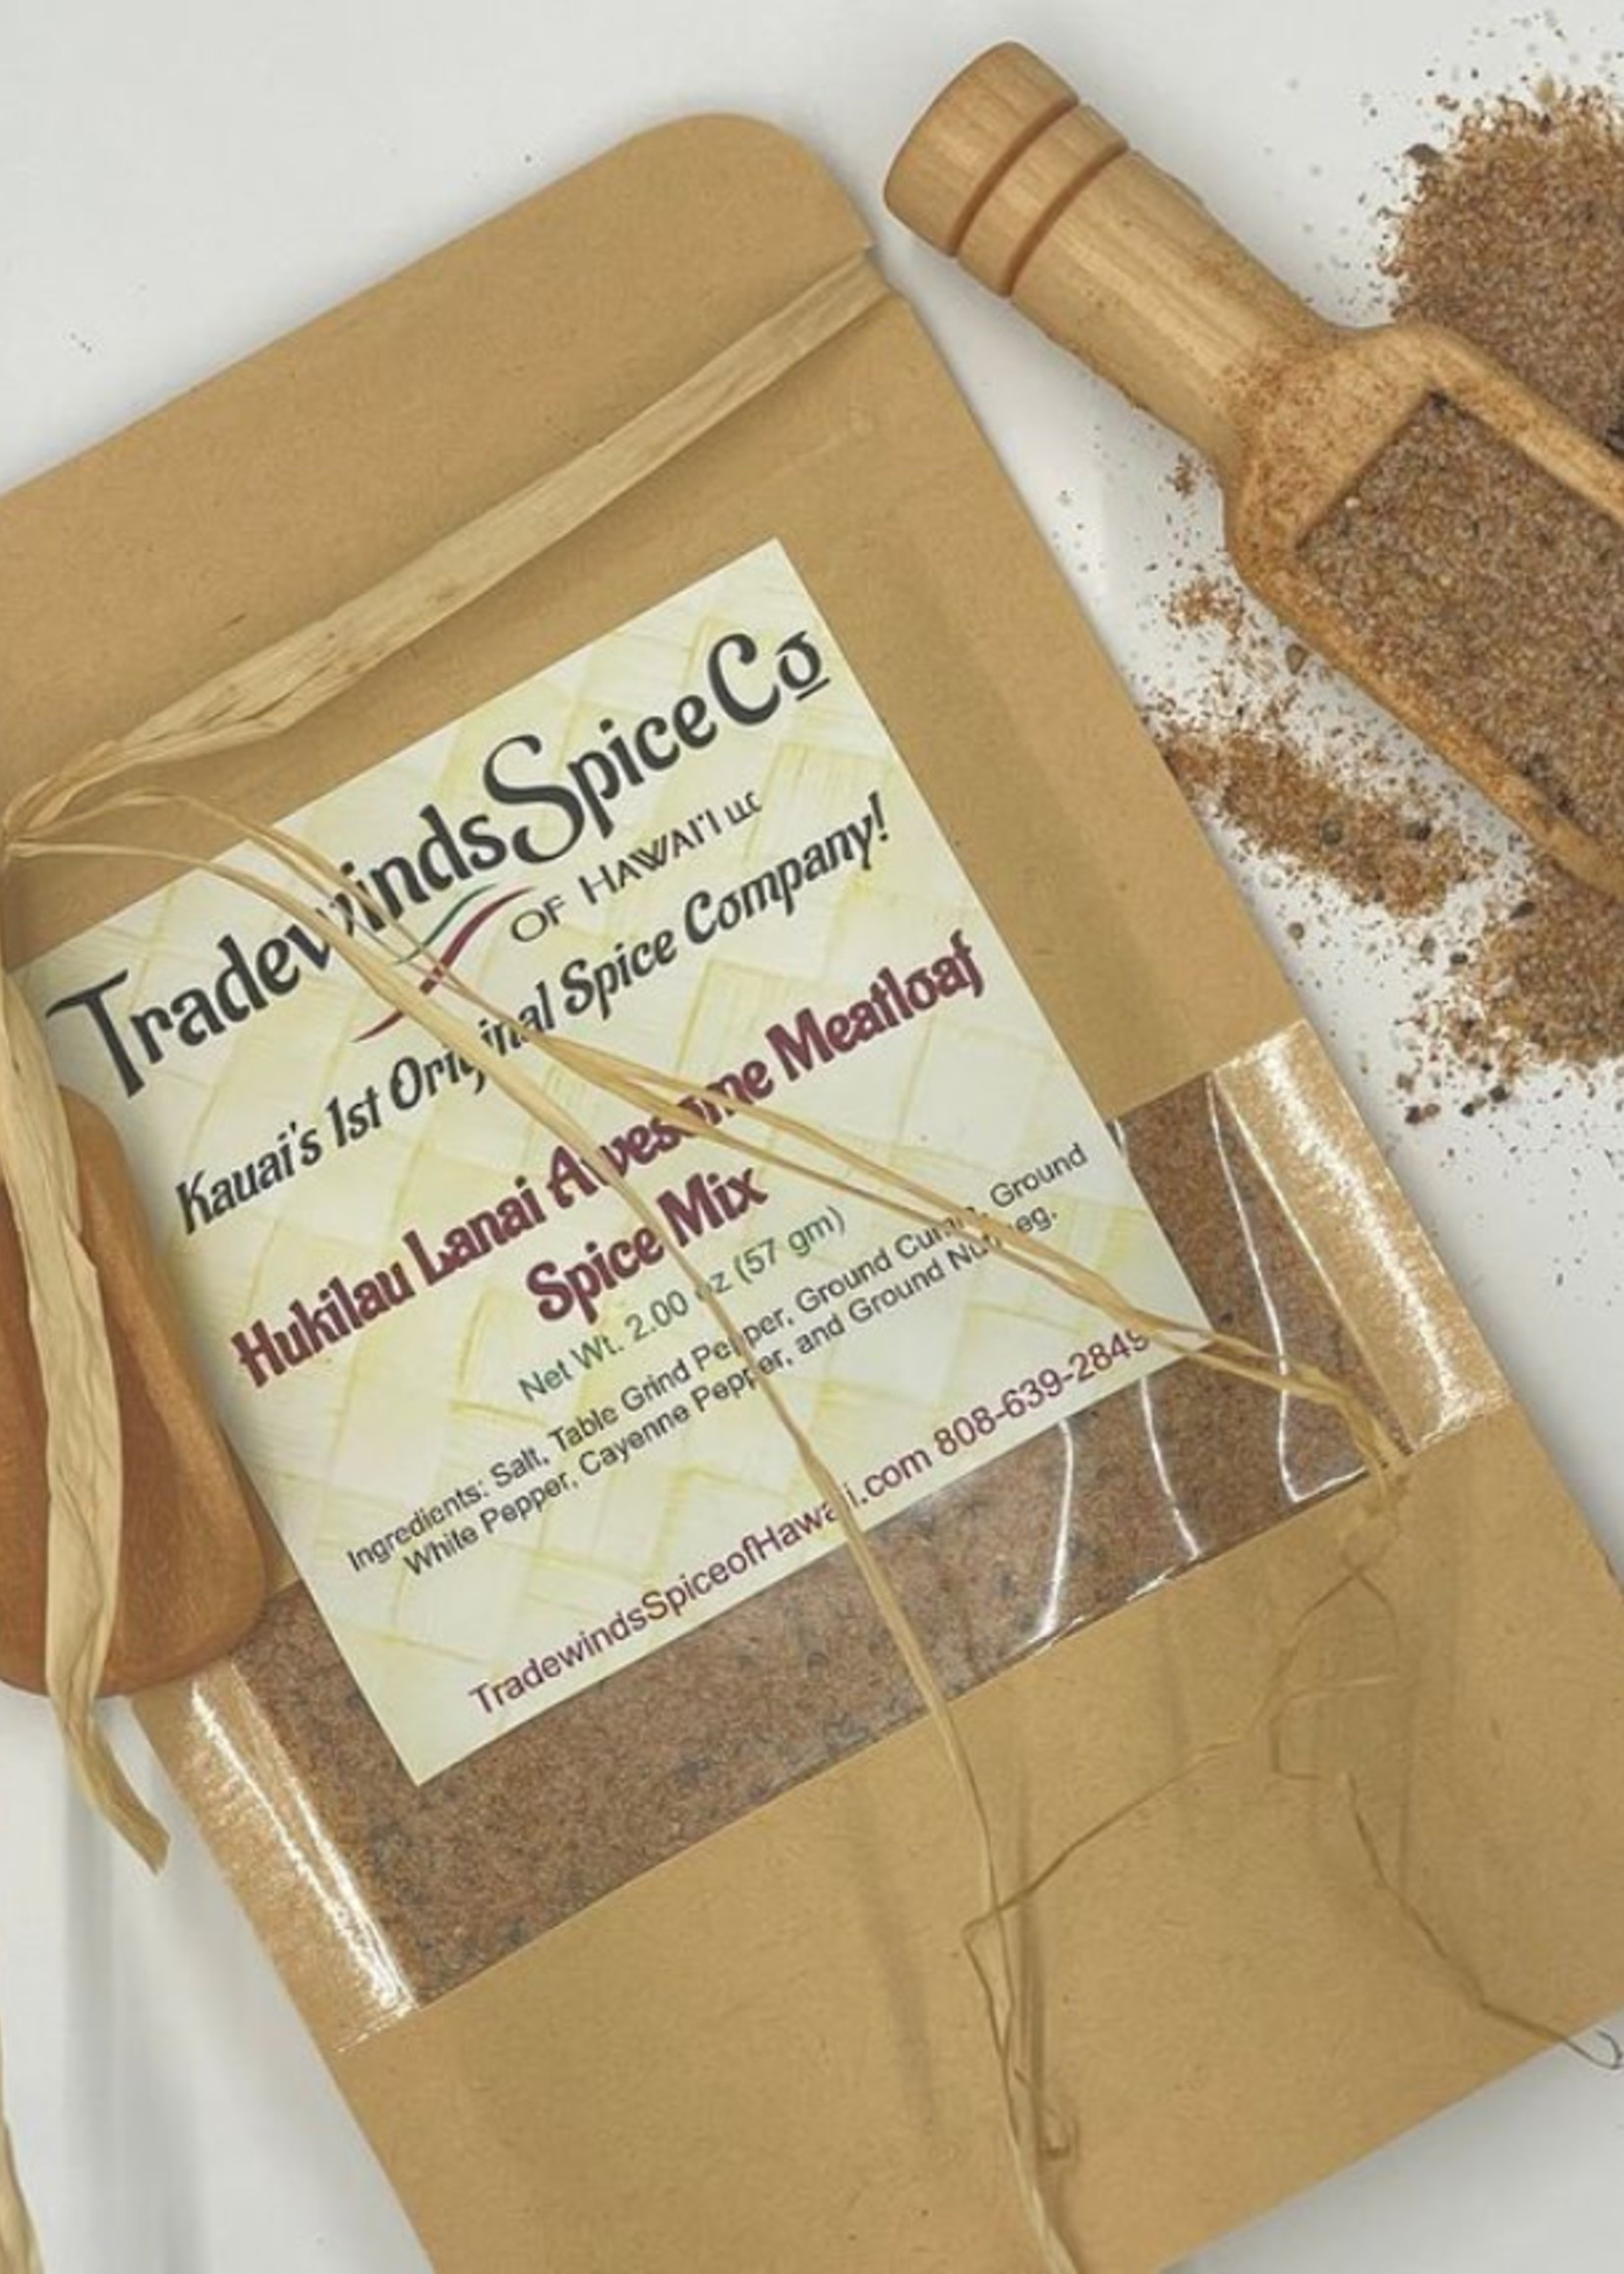 Tradewinds Spice Company 2 oz. Hukilau Lanai Awesome Meatloaf Spice Mix